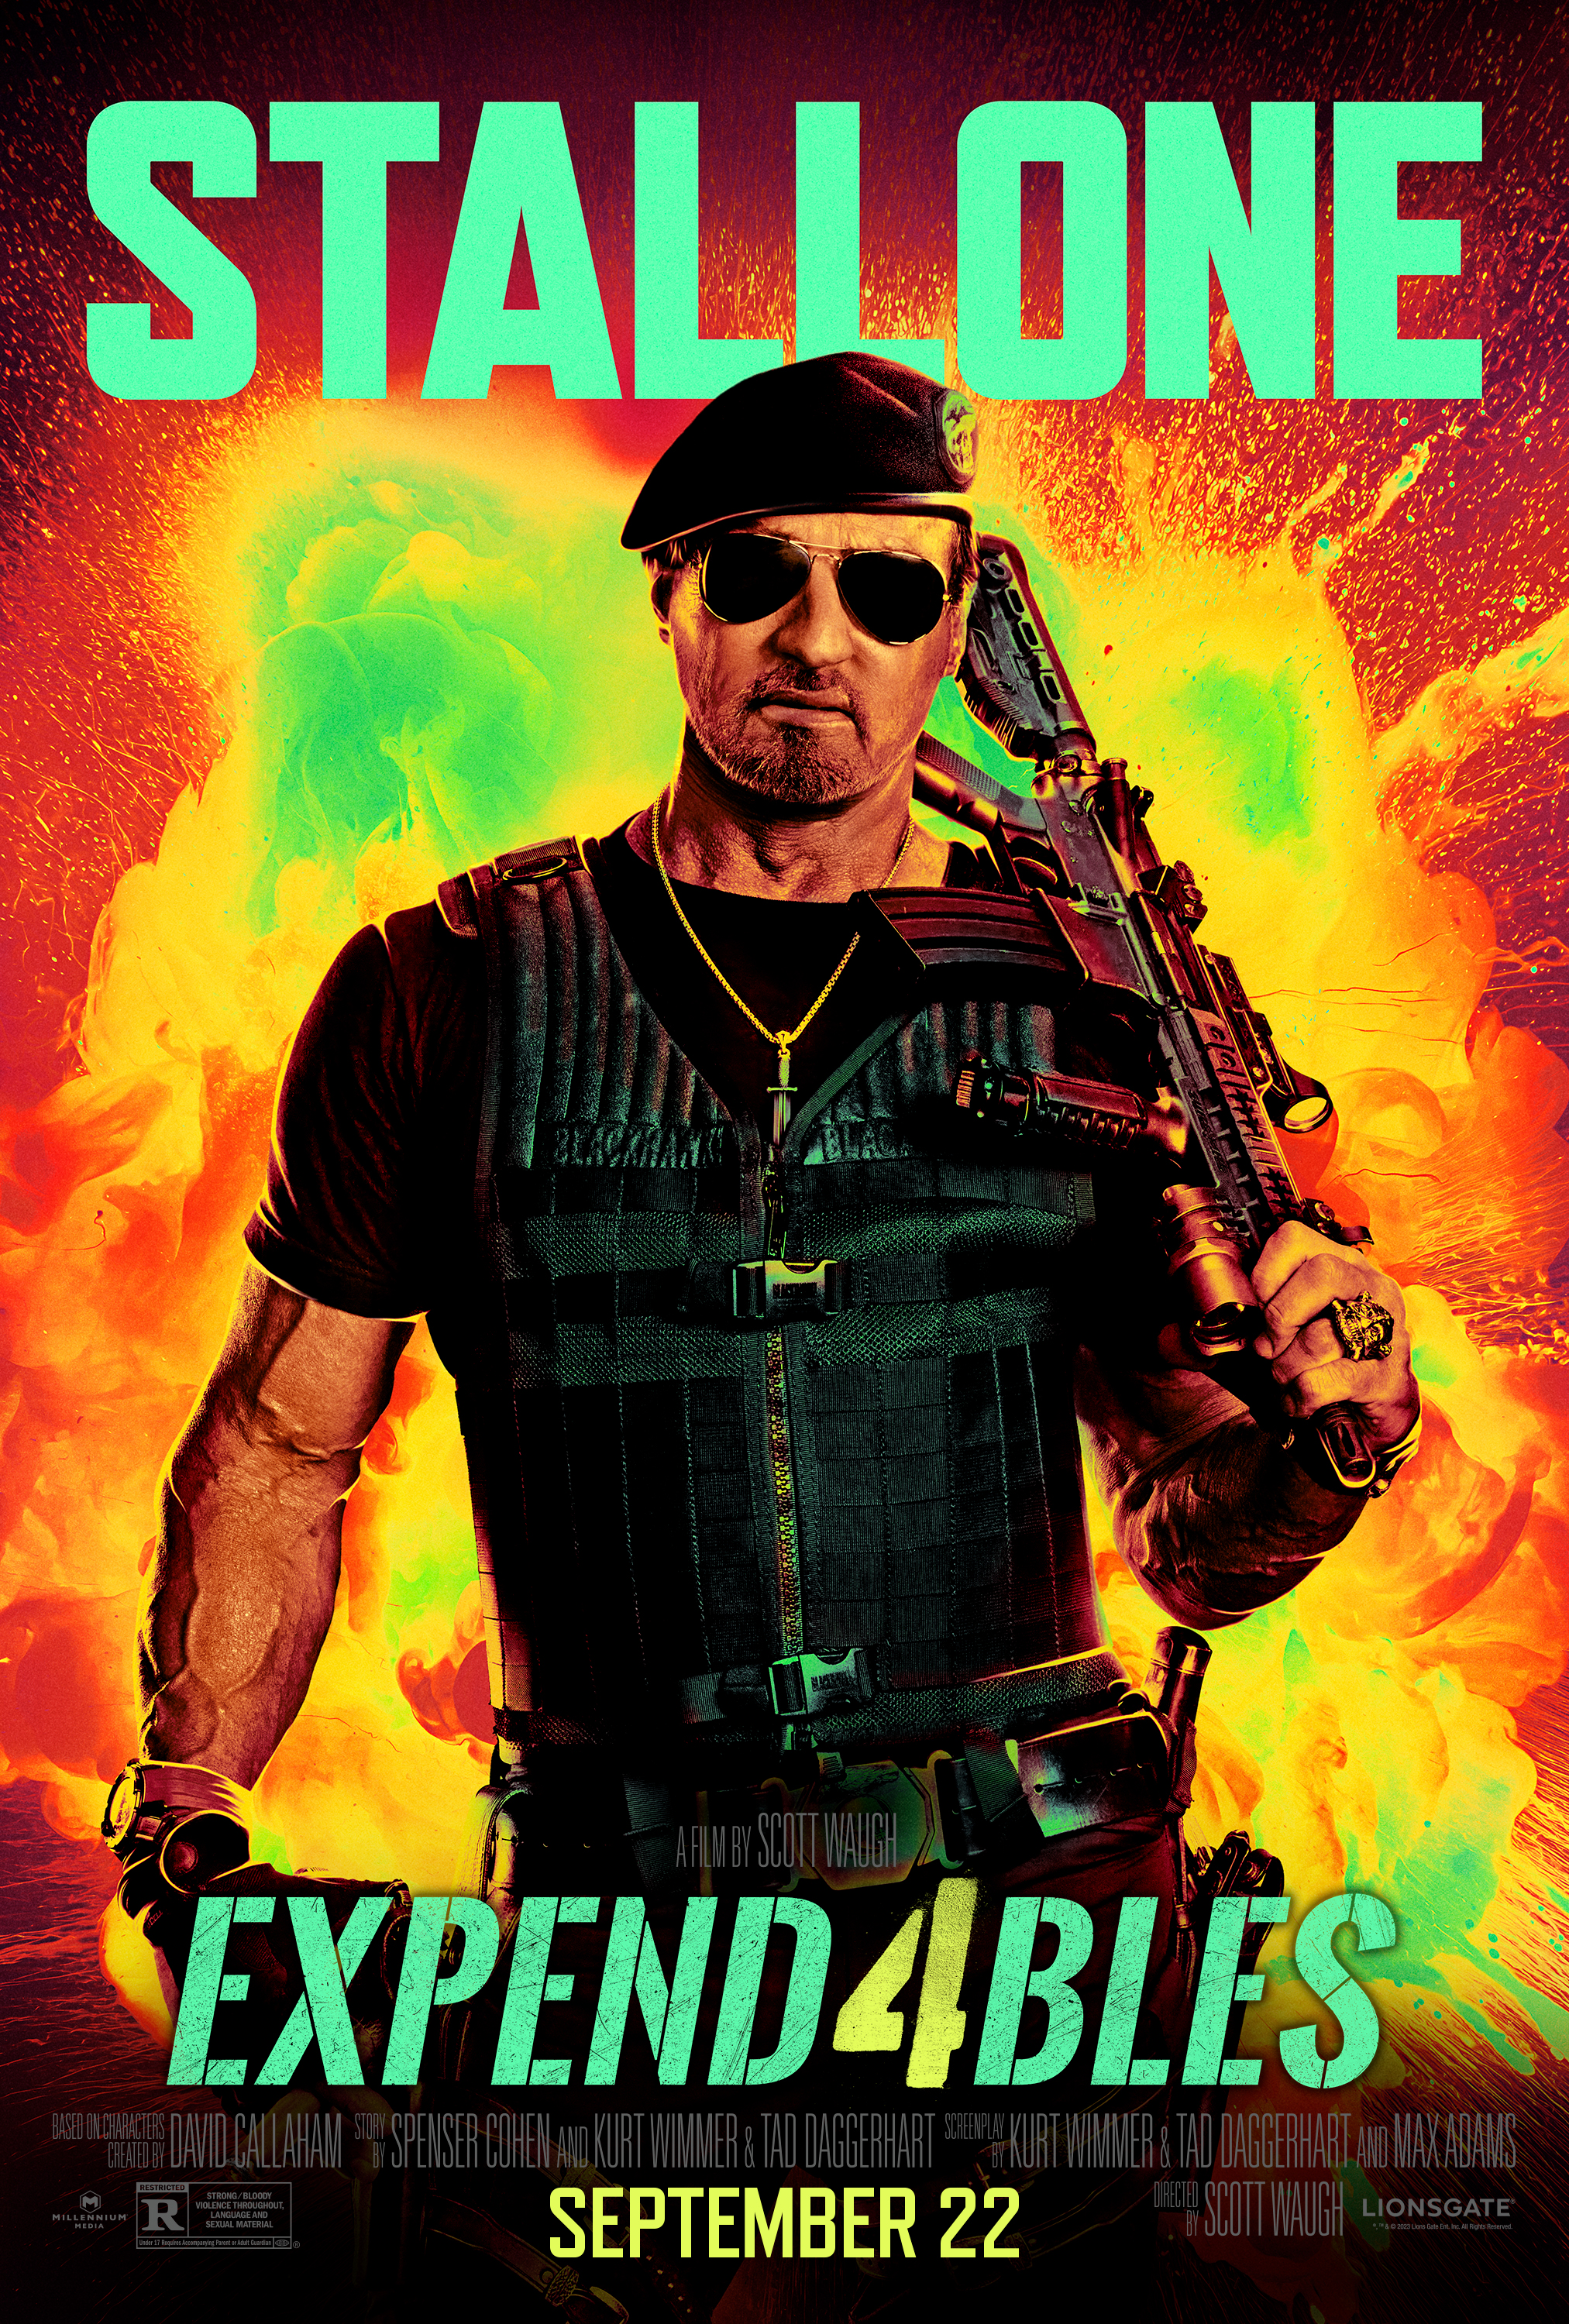 Sylvester Stallone coloca una pistola sobre el hombro en el póster de Expend4bles.